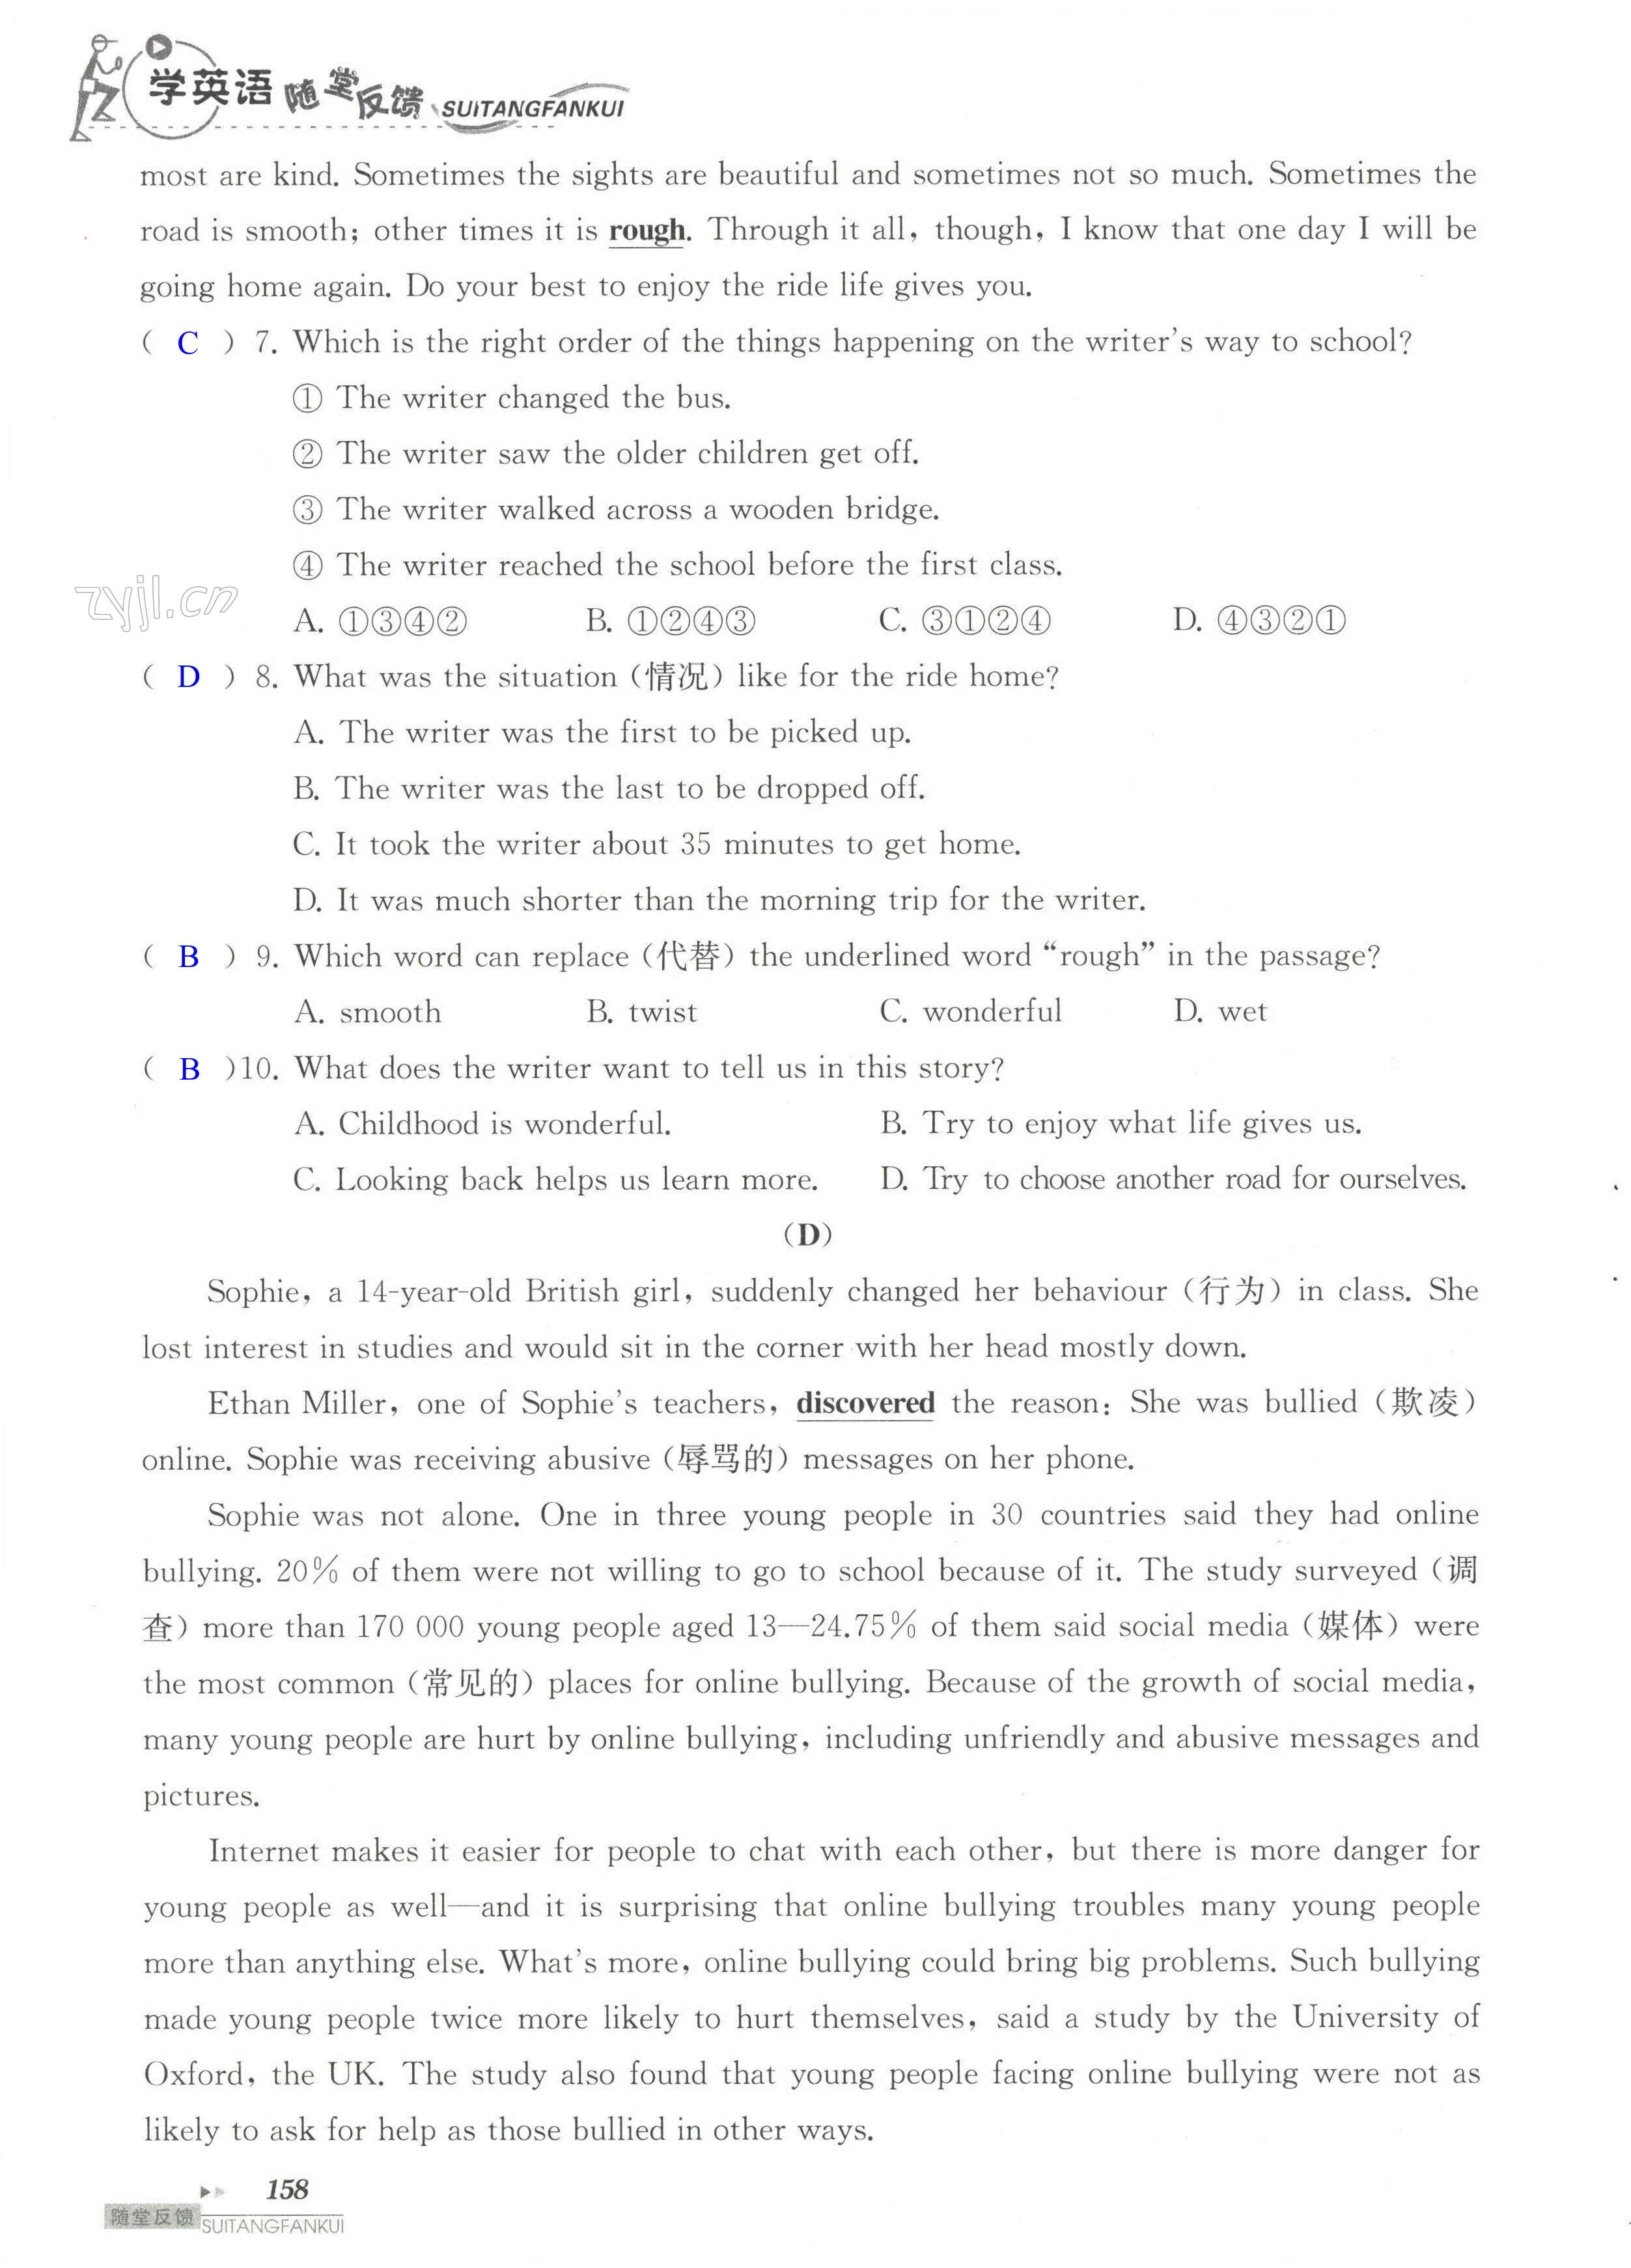 单元综合测试卷 Test for Unit 2 of 8A - 第158页